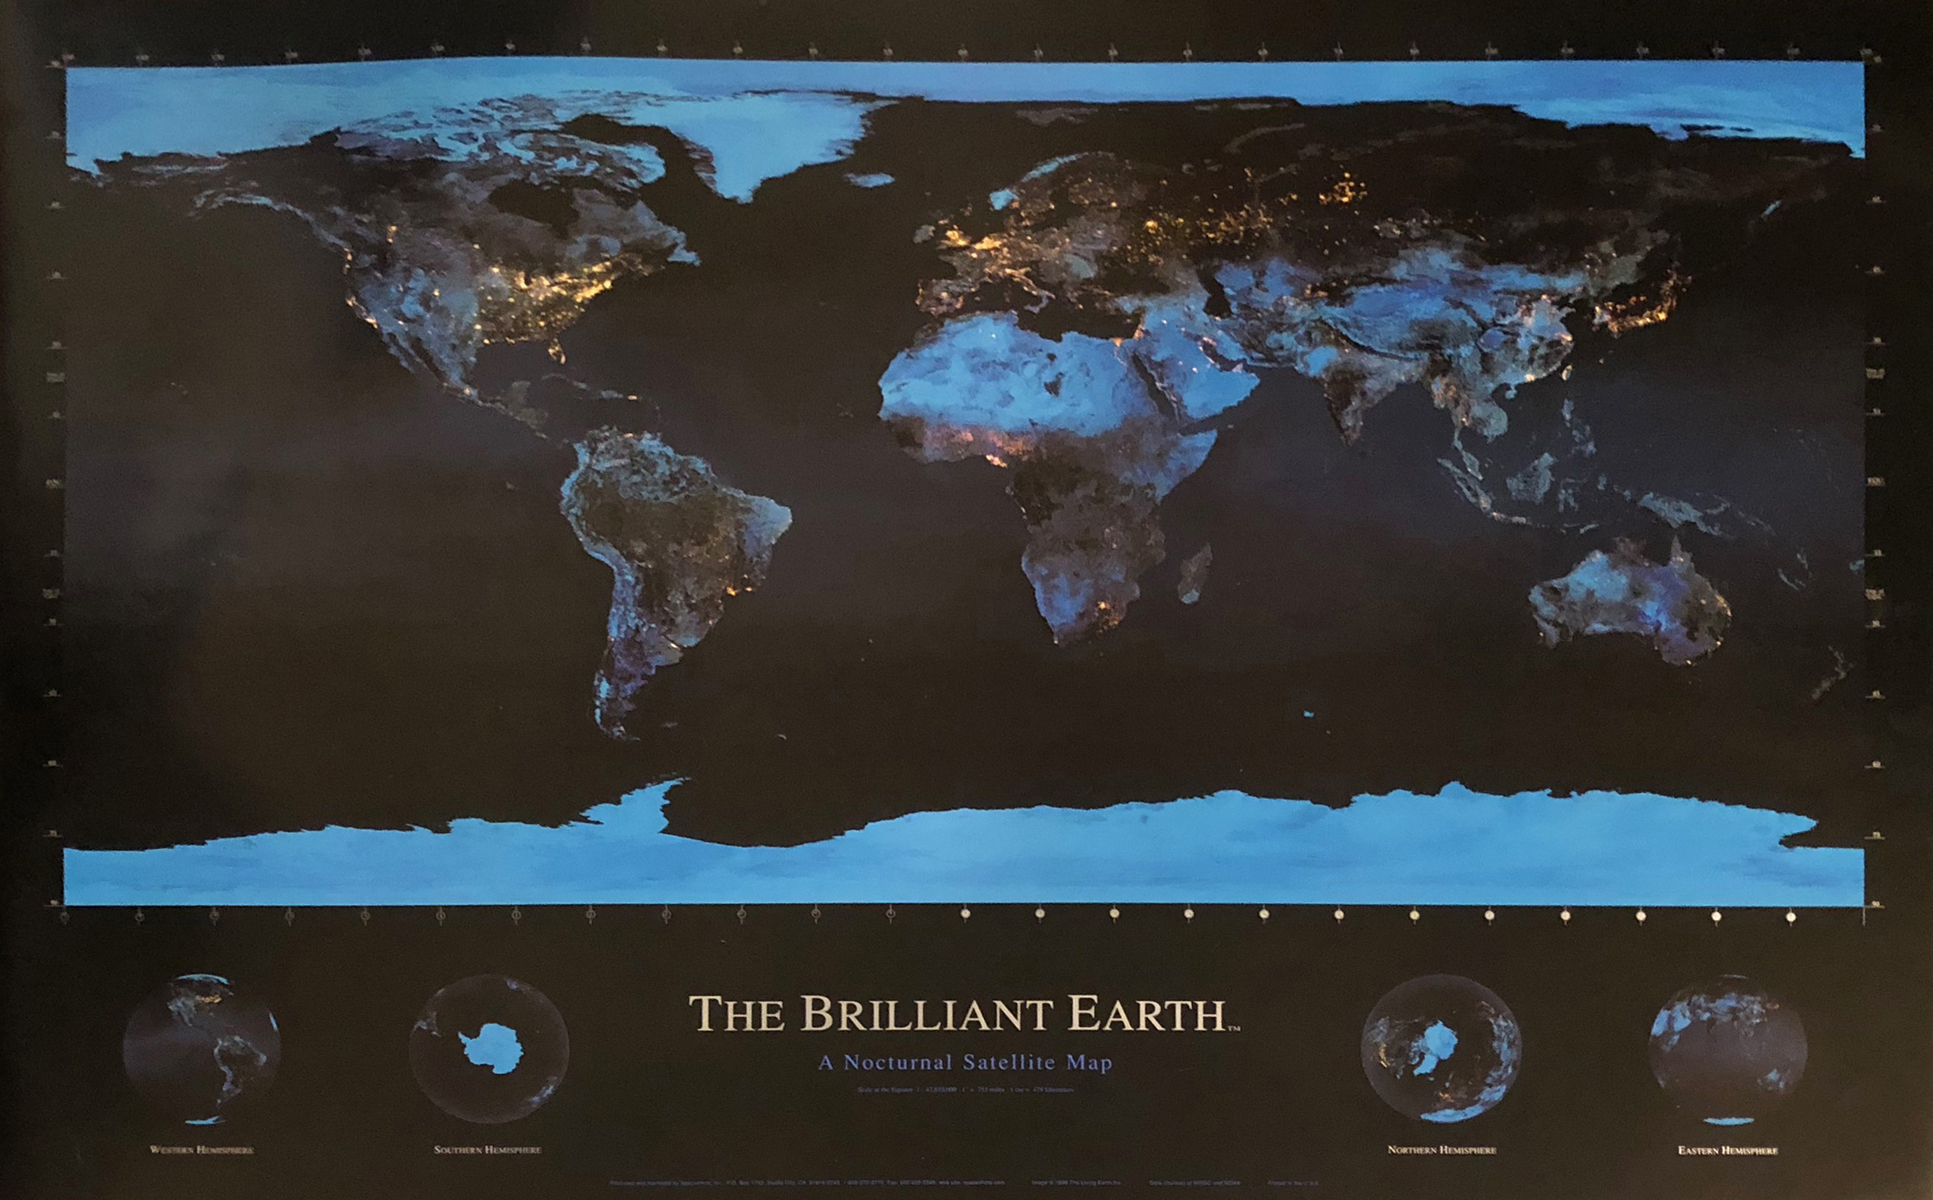 The Brilliant Earth